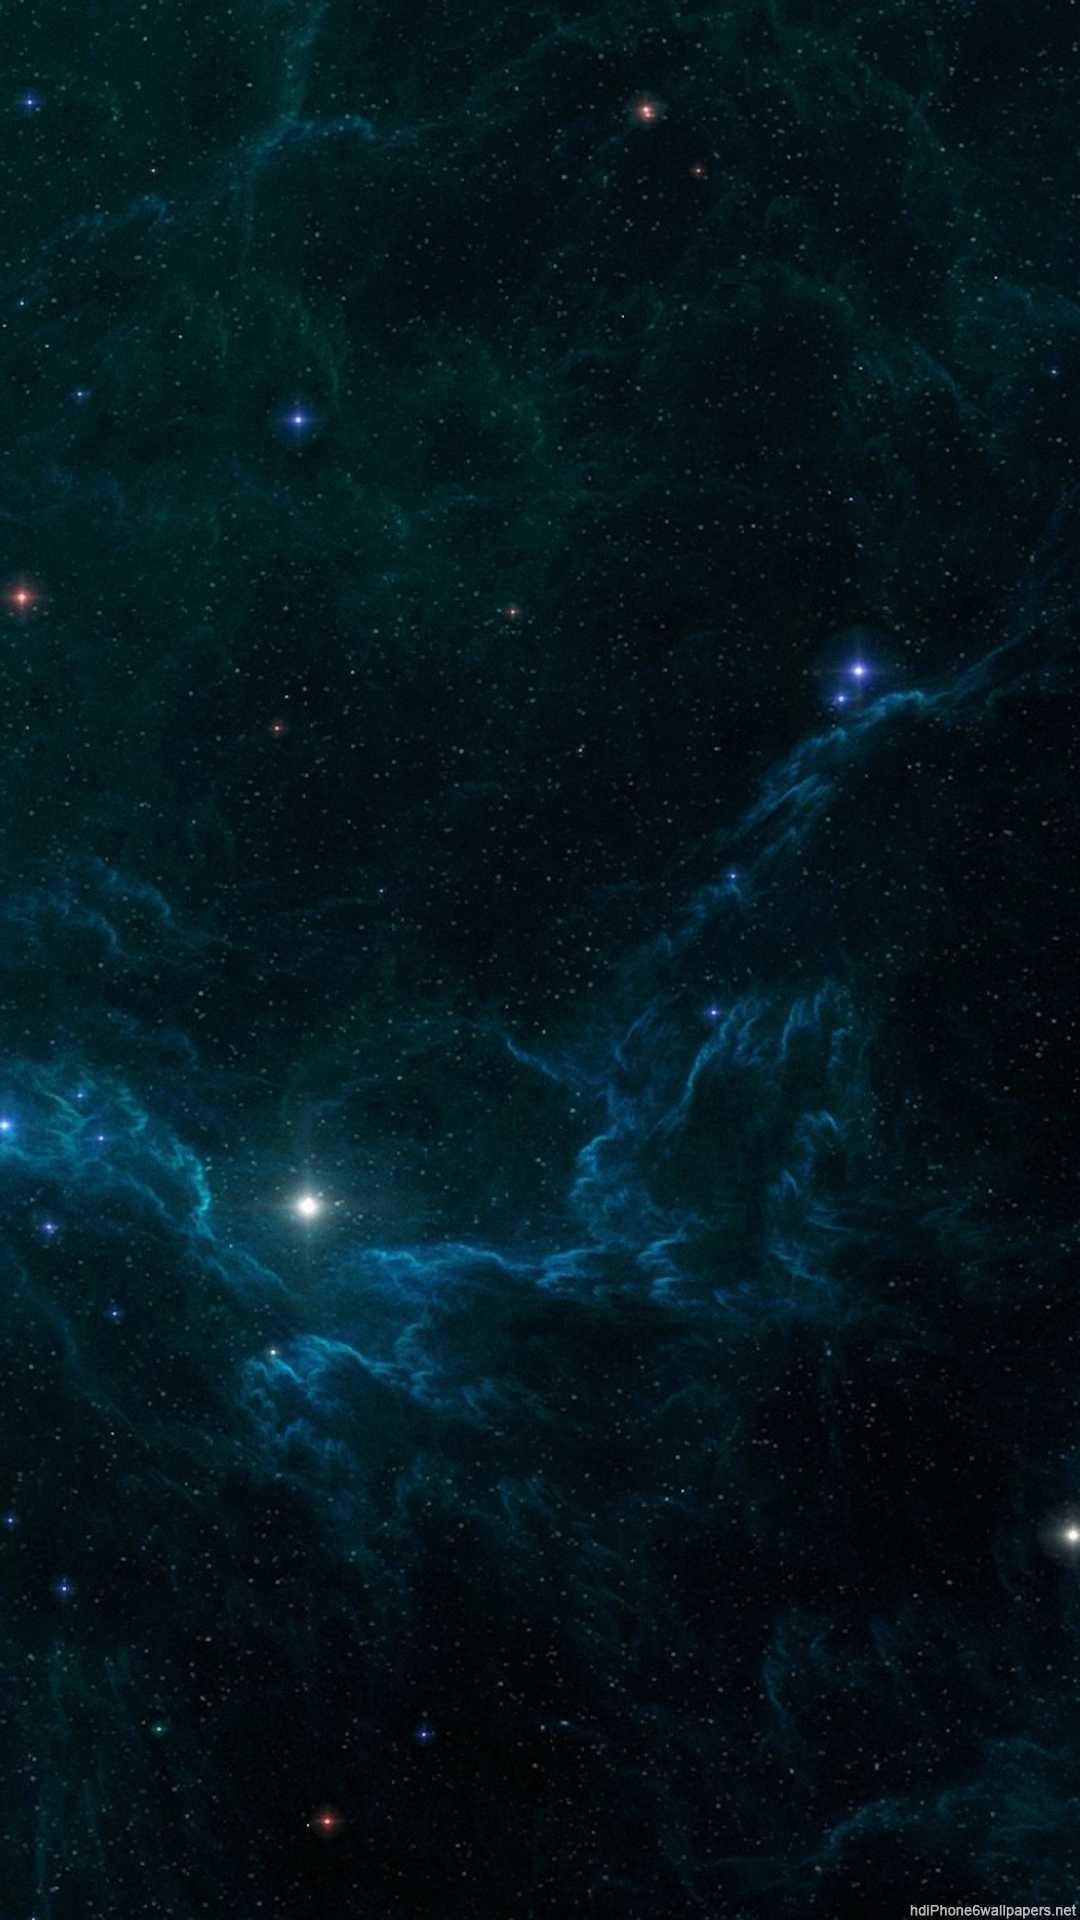 1080x1920, Iphone Stars Wallpaper With Star Night Sky - Nova - HD Wallpaper 